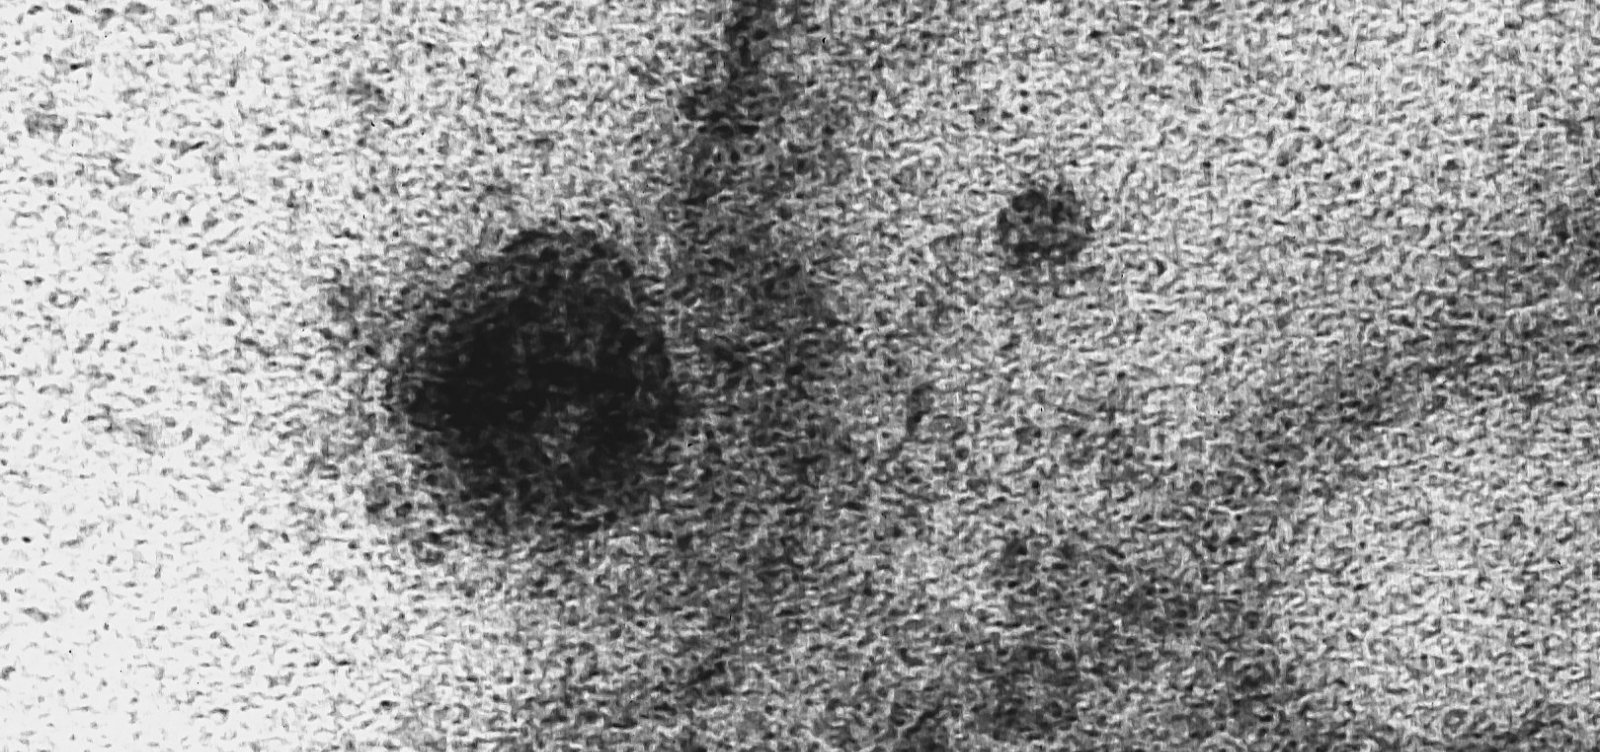 Registros inéditos mostram infecção do novo coronavírus em célula